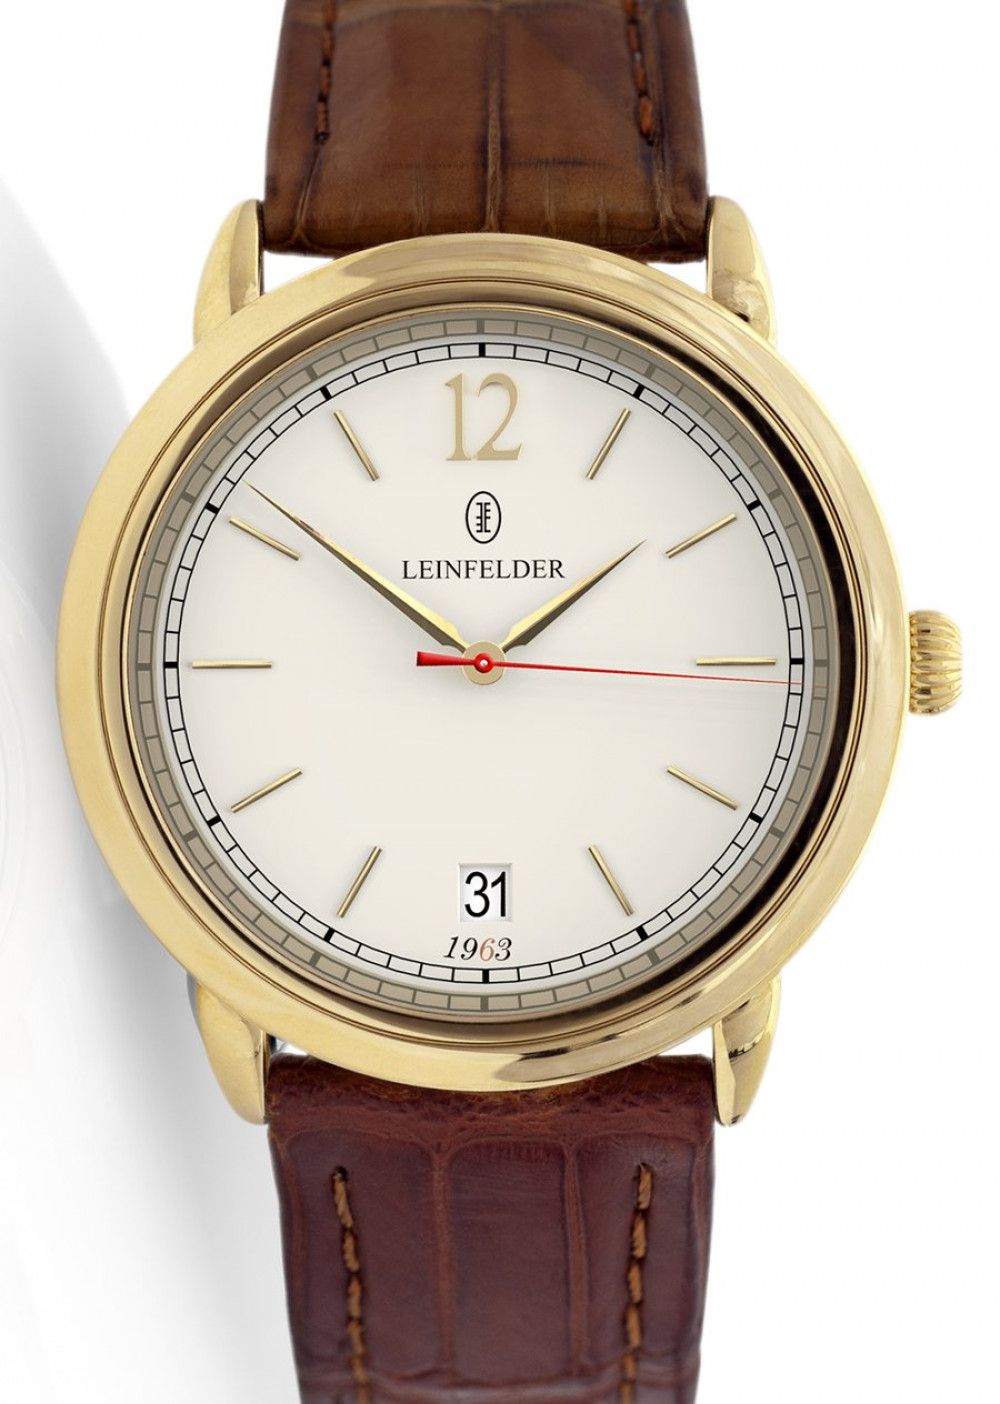 Zegarek firmy Leinfelder Uhren München, model Jubiläumsmodell